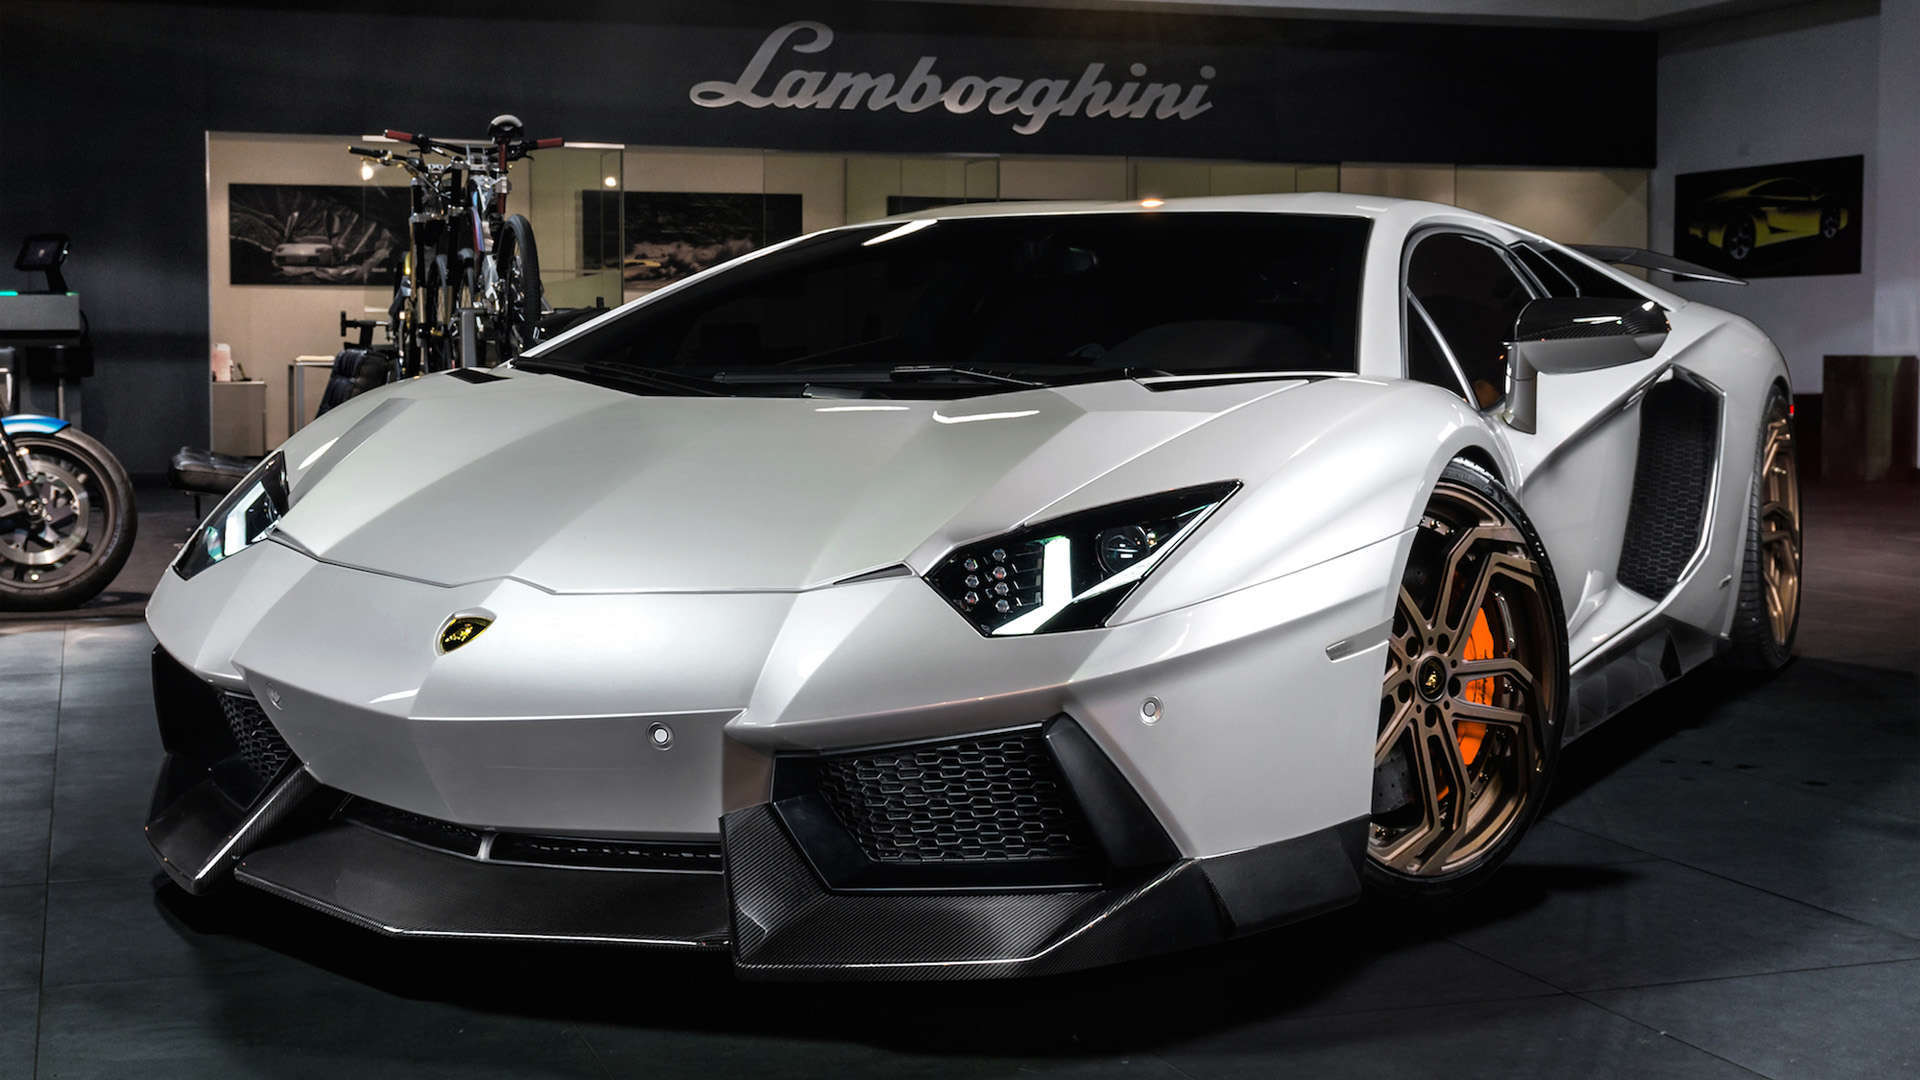 Lamborghini Wallpapers 1080p - Wallpaper Cave